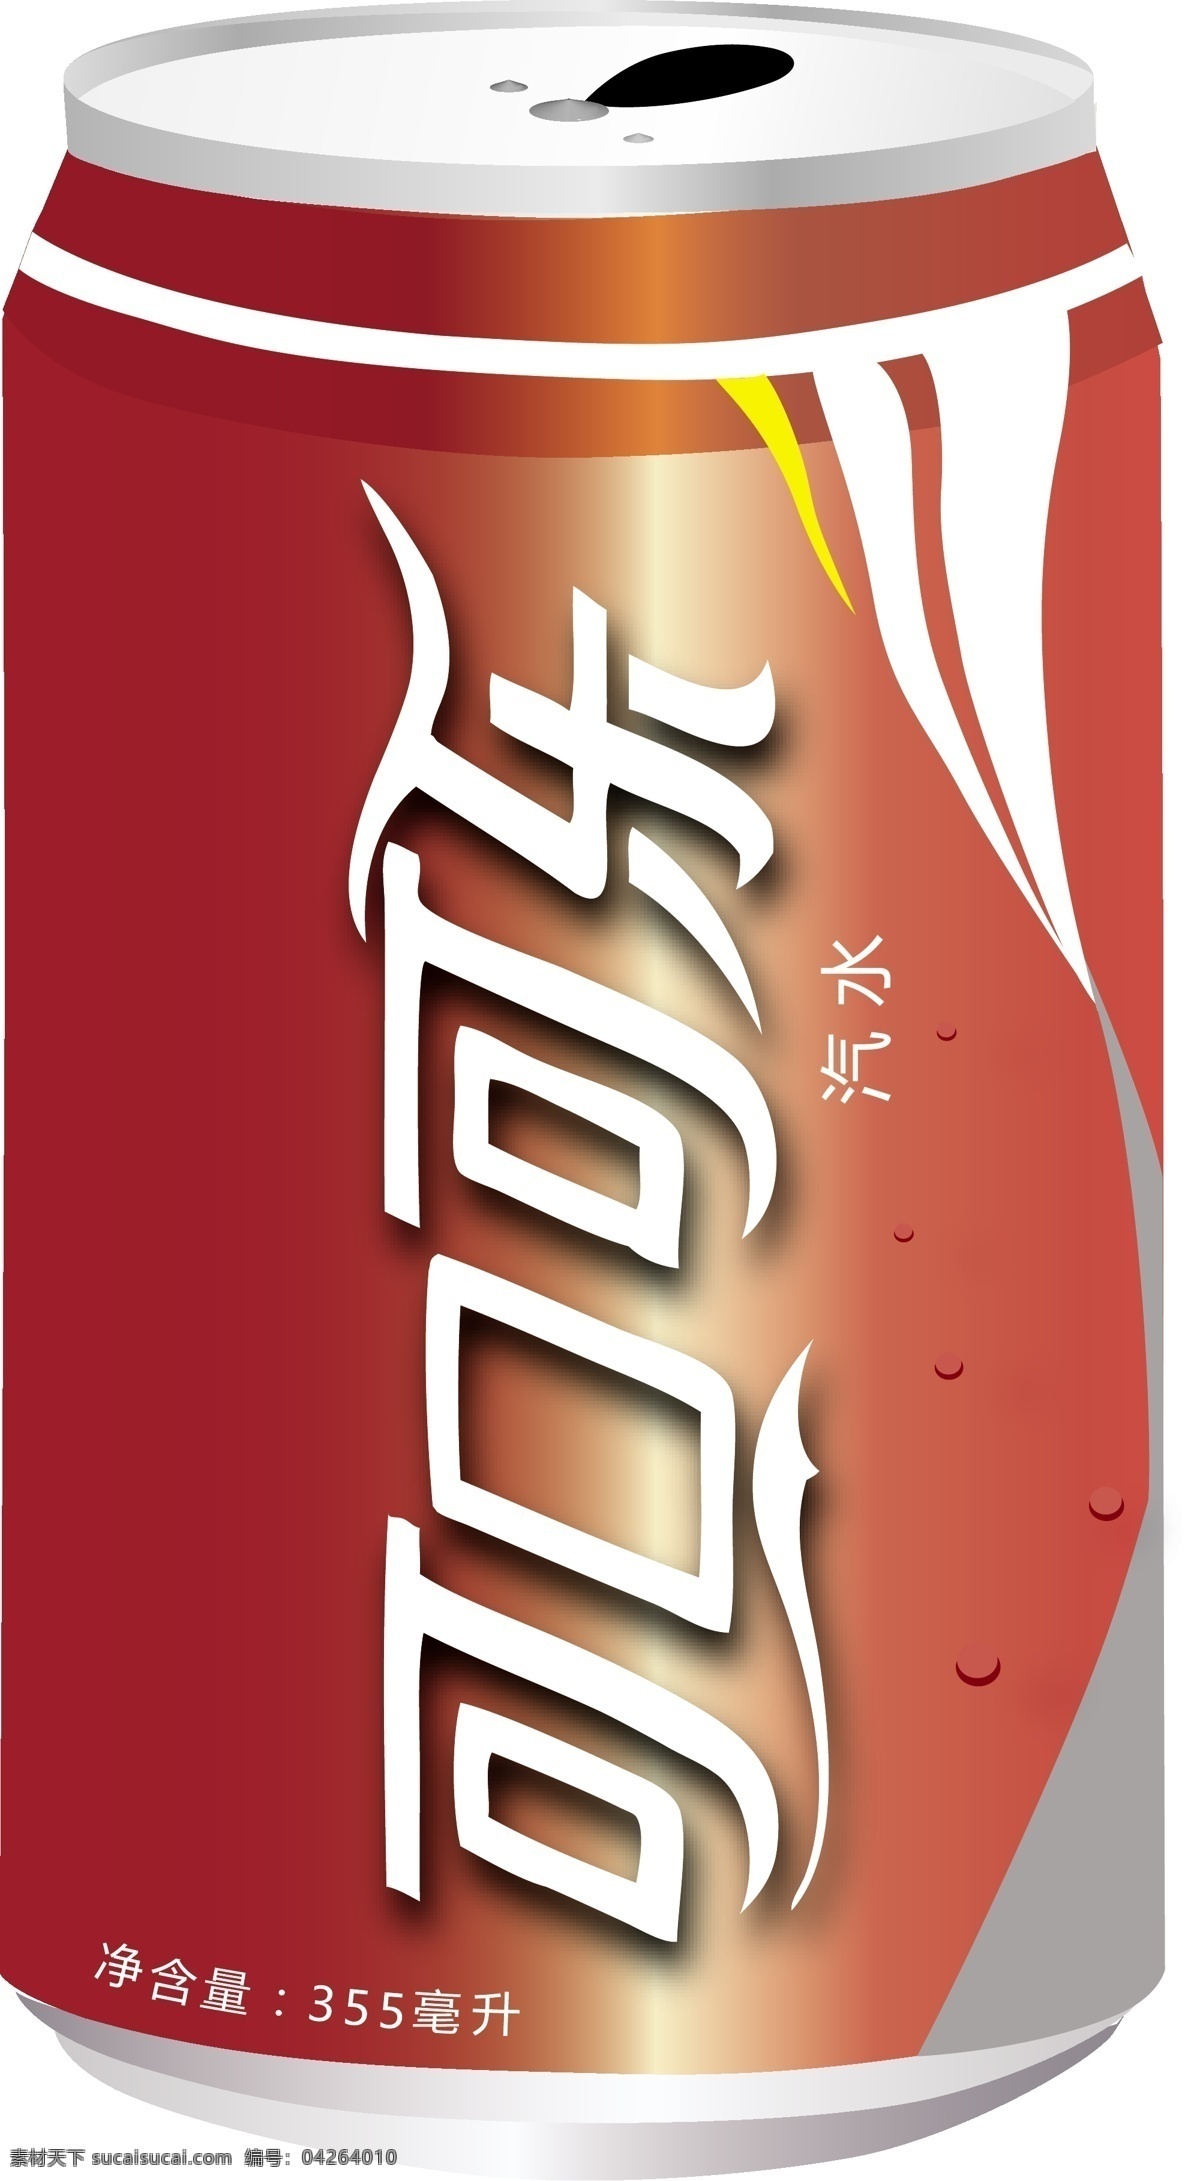 可口可乐 矢量图 瓶子 可口可乐标志 ai素材 包装设计